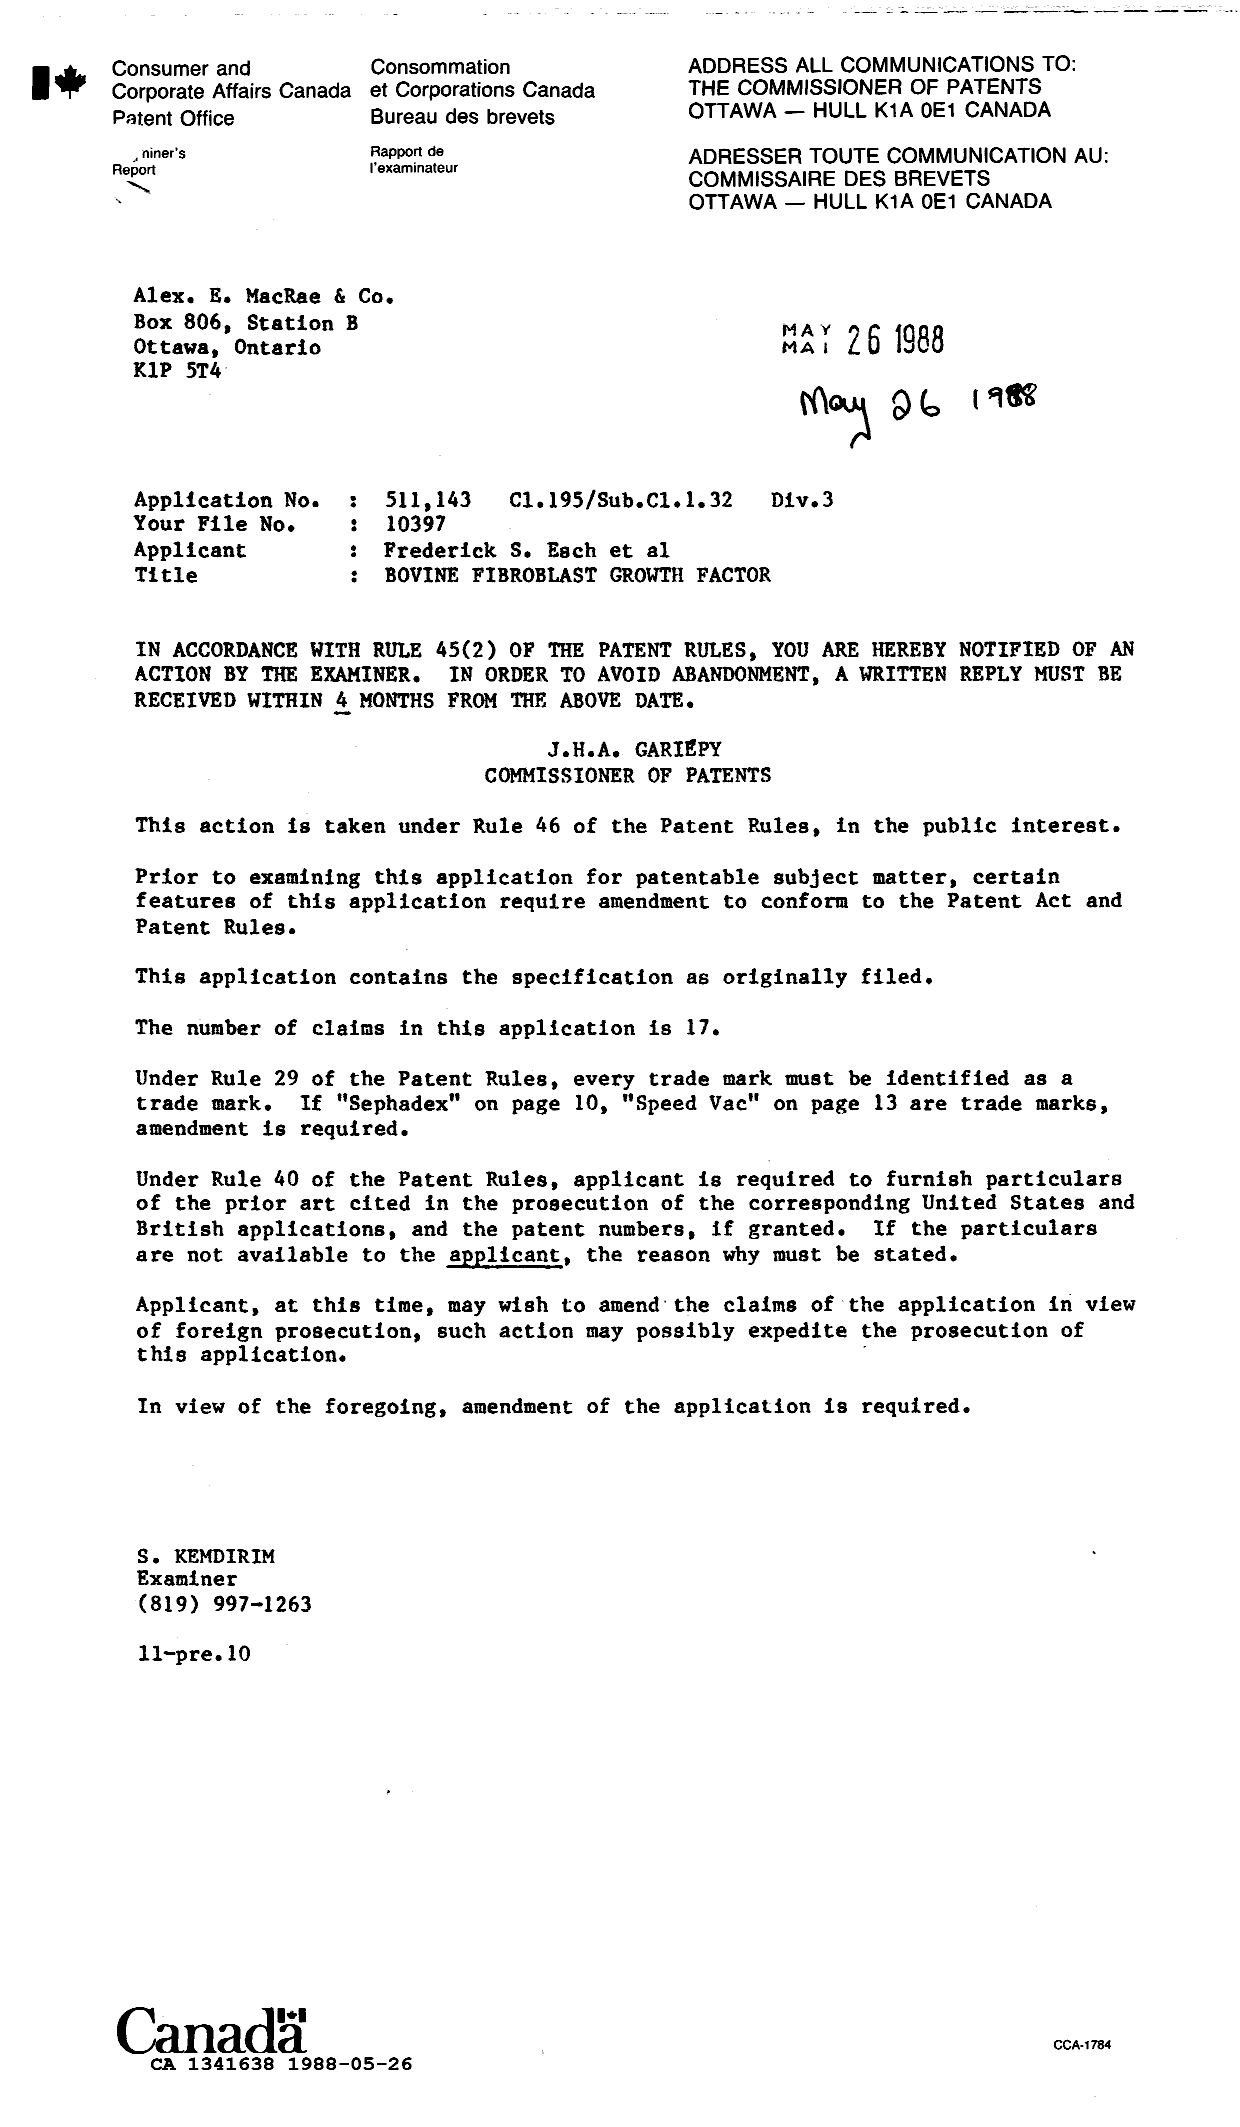 Document de brevet canadien 1341638. Demande d'examen 19880526. Image 1 de 1